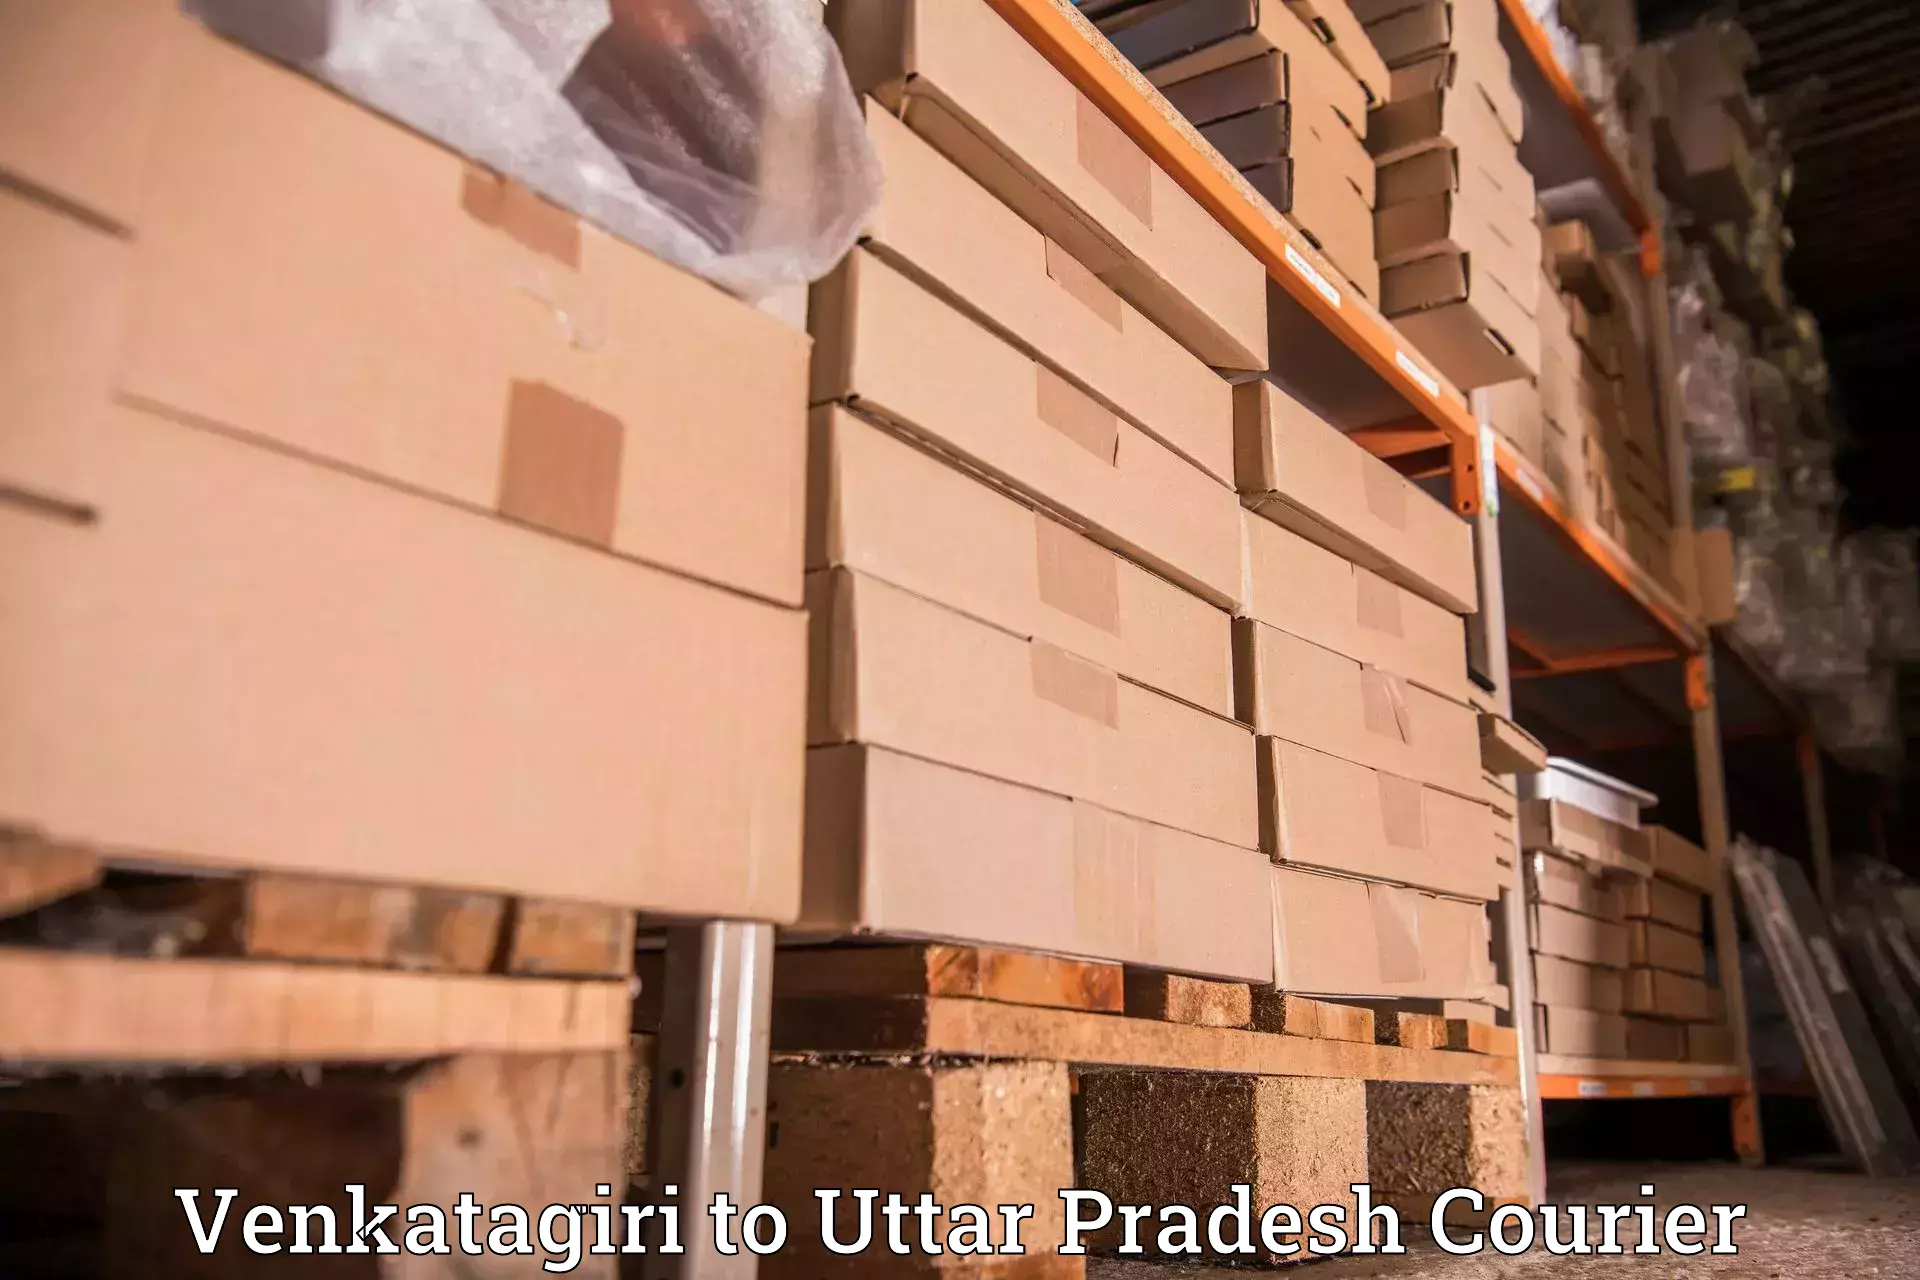 Business delivery service Venkatagiri to Fatehgarh